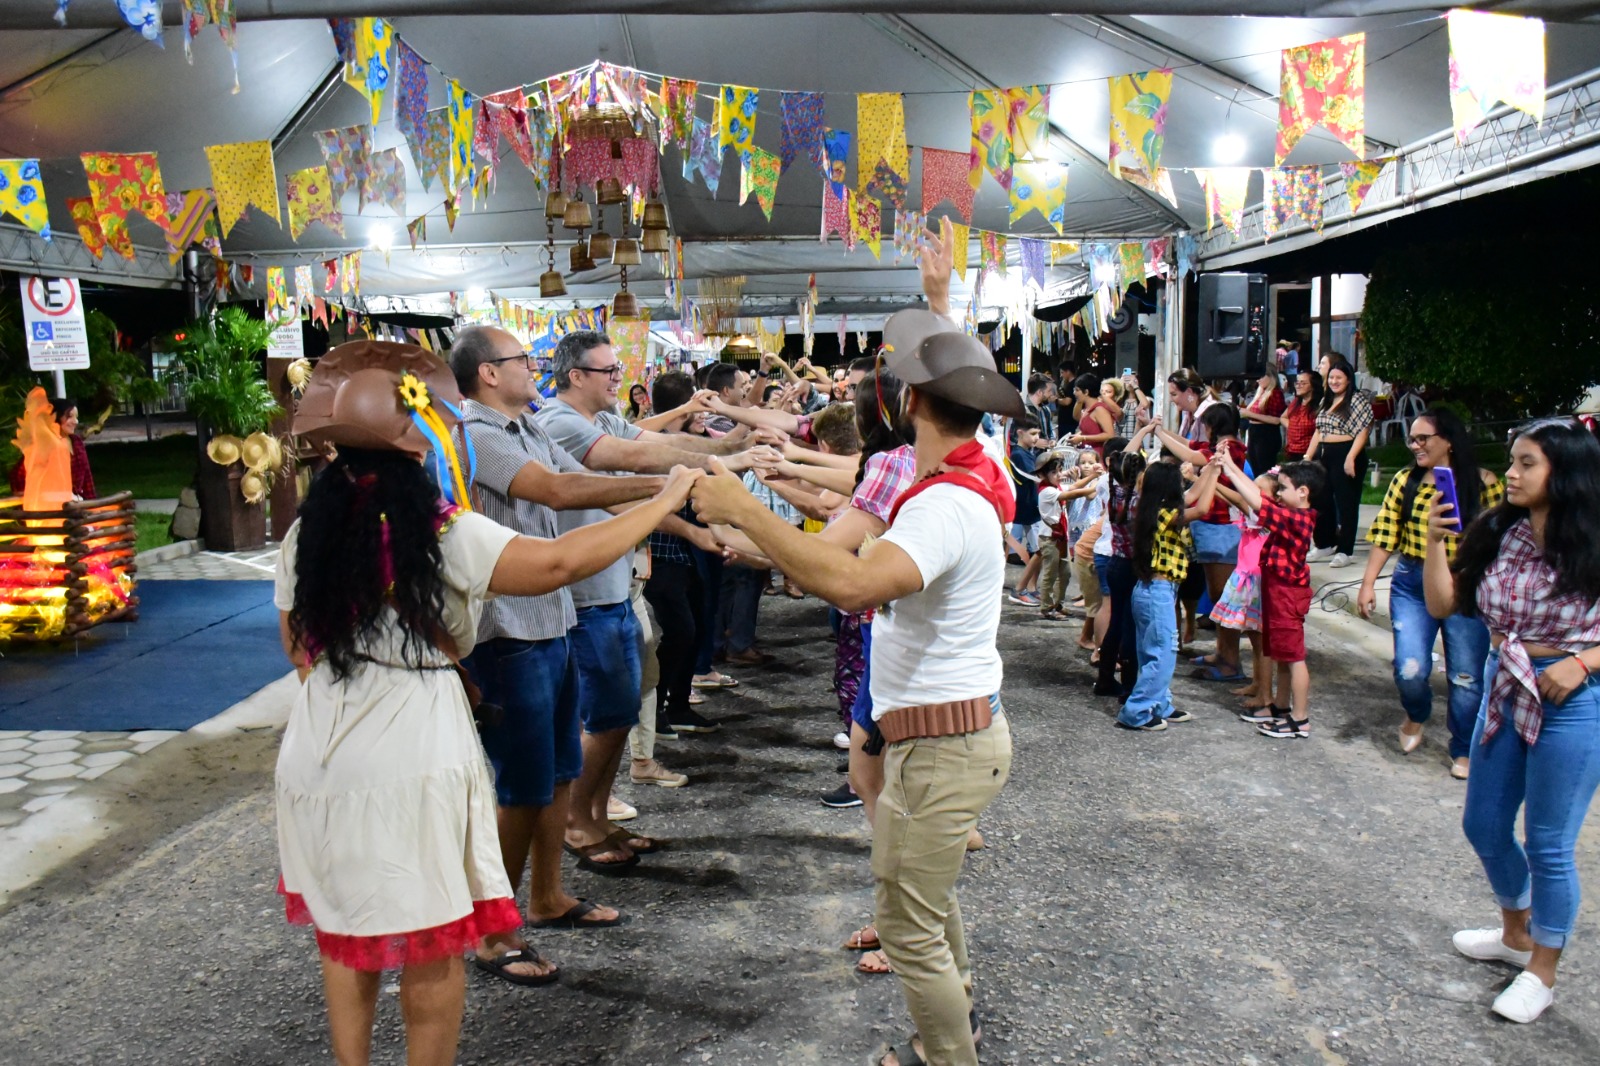 Mostra servidores dançando quadrilha em meio a um local decorado em tema de festas juninas. Eles estão de mãos dadas formando um túnel com os braços.